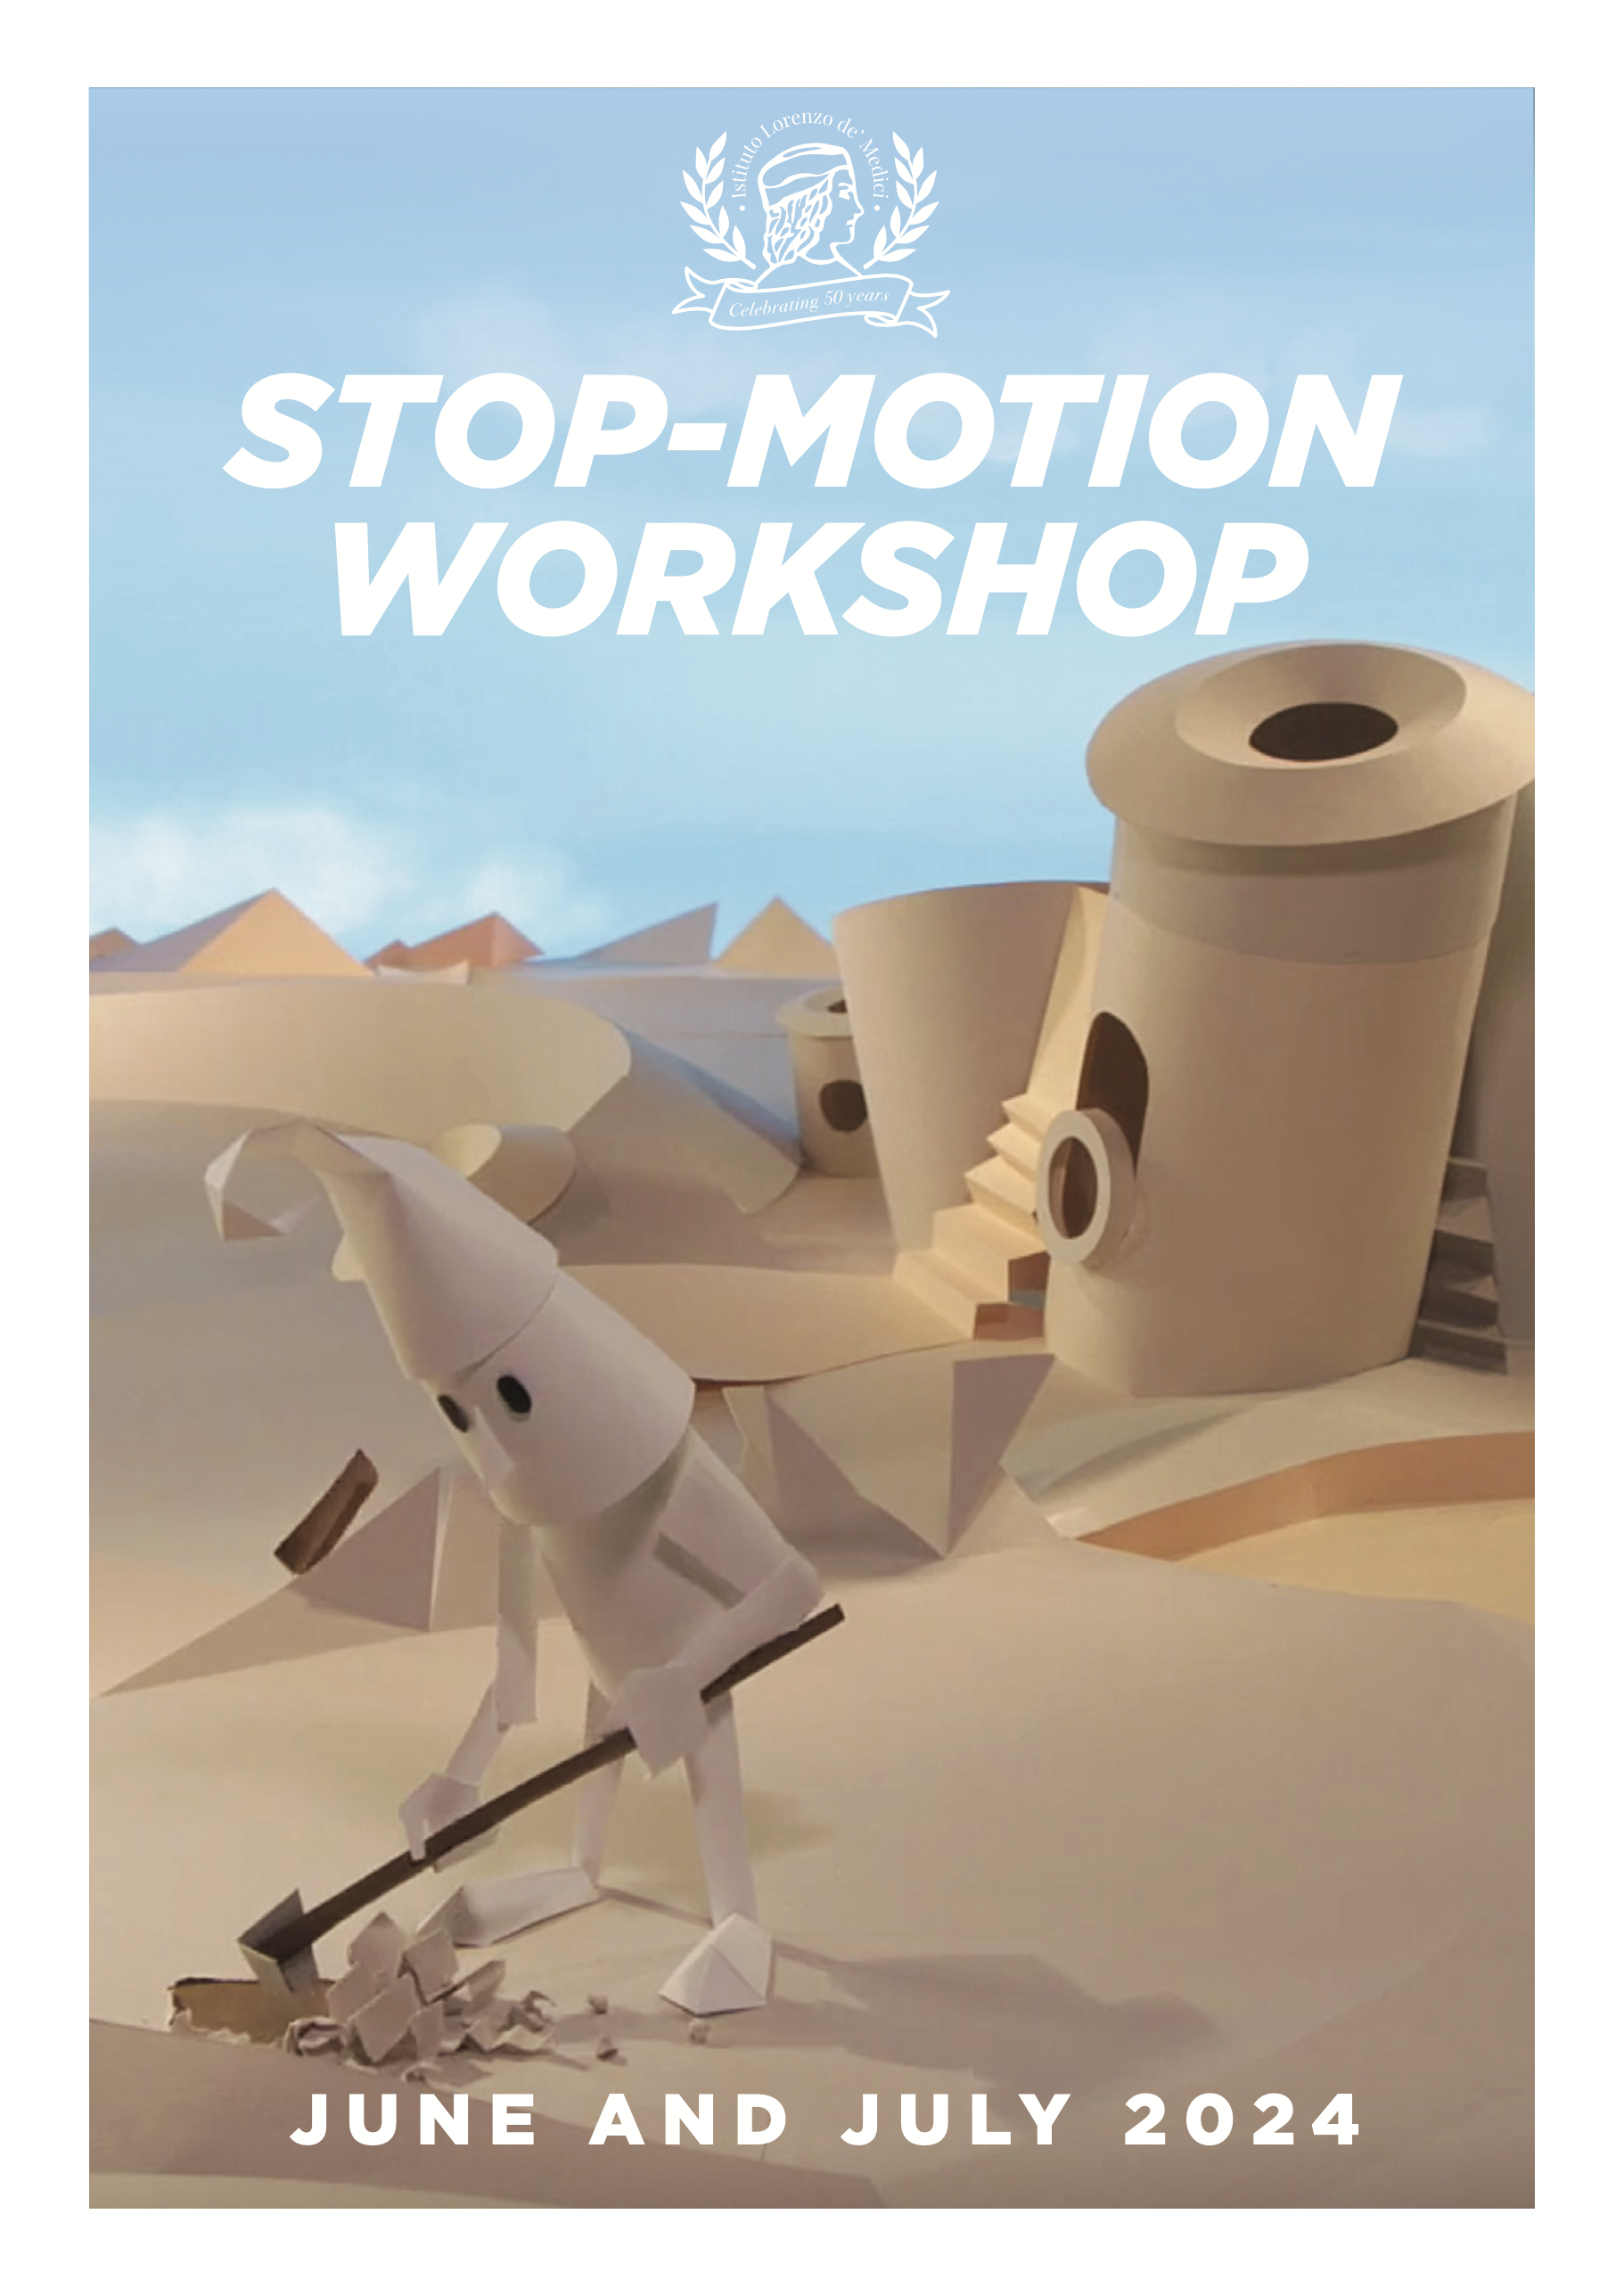 STOP-MOTION WORKSHOP